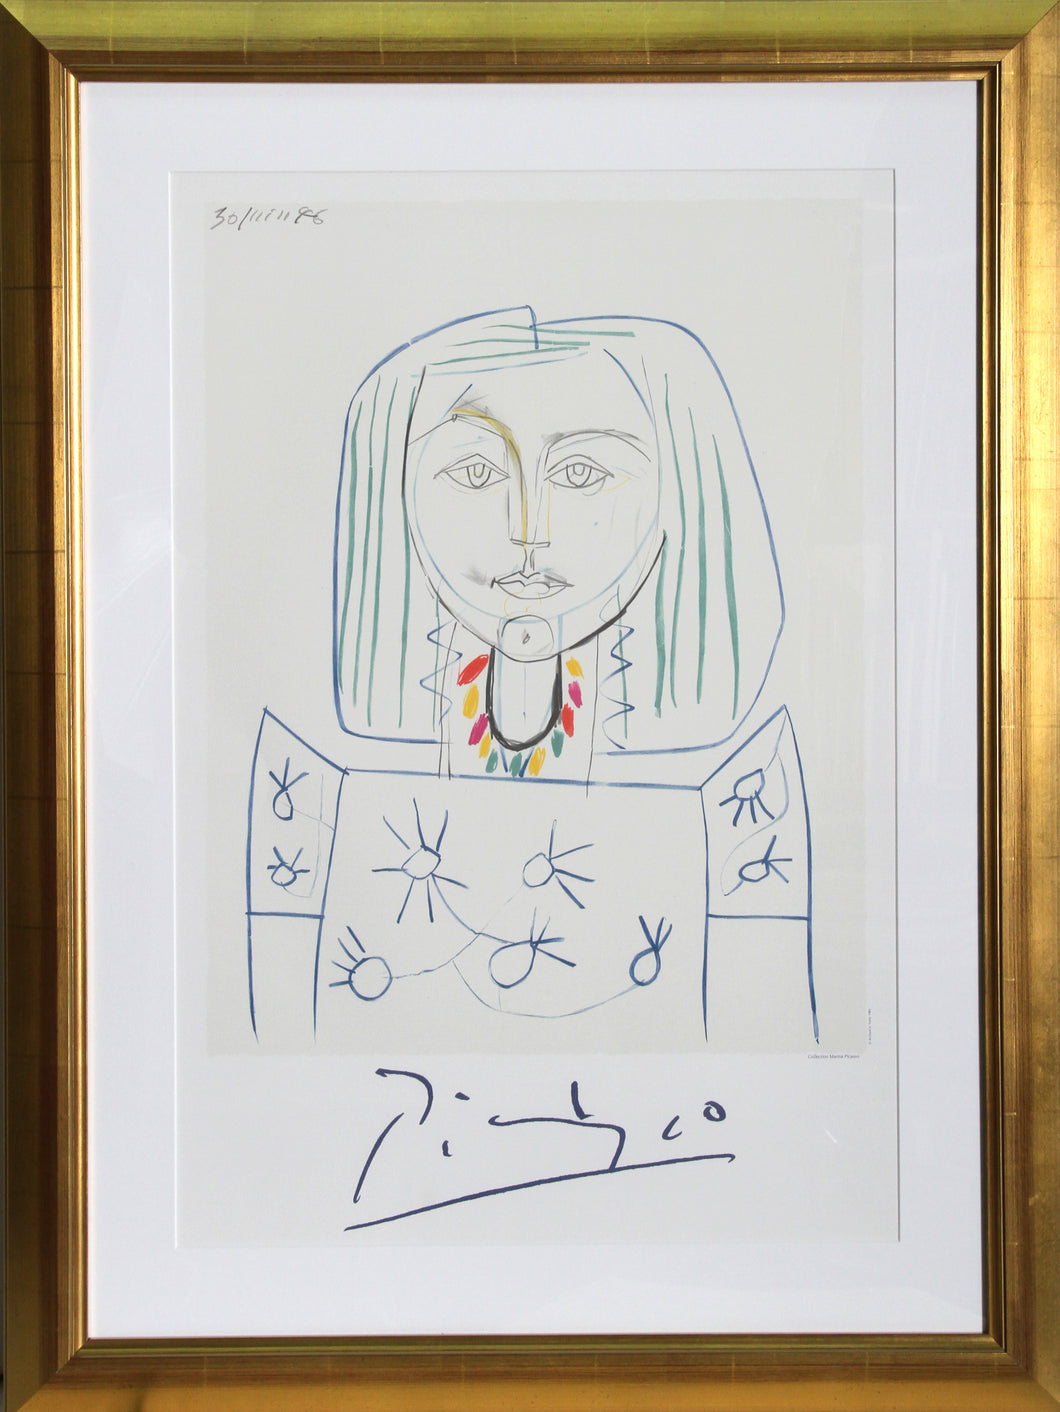 Pablo Picasso, Portrait de Femme au Collier, 33-7-k, Lithograph